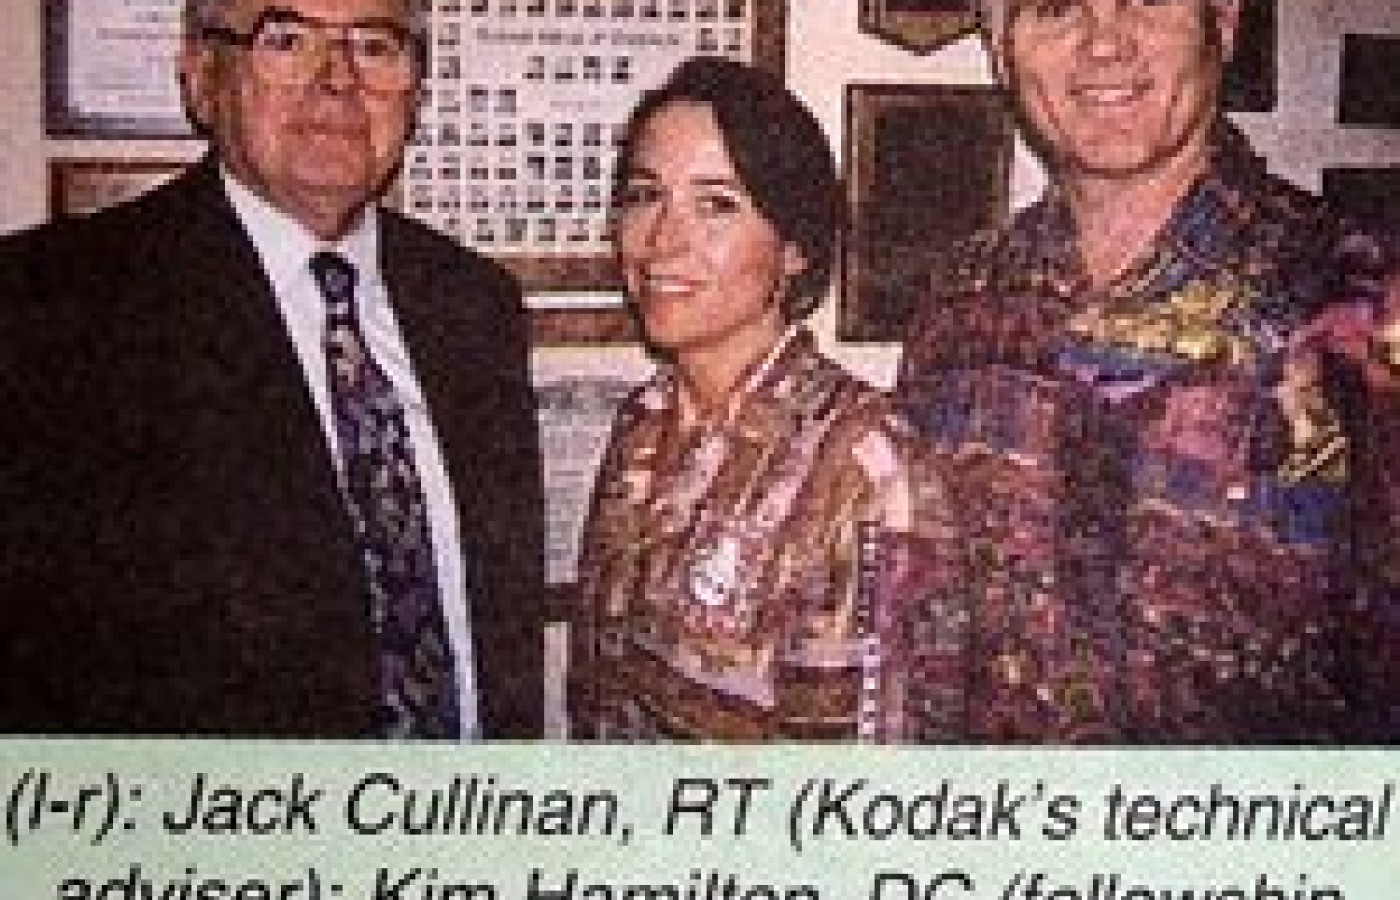 Jack Cullinan, Kim Hamilton, and Terry Yochum